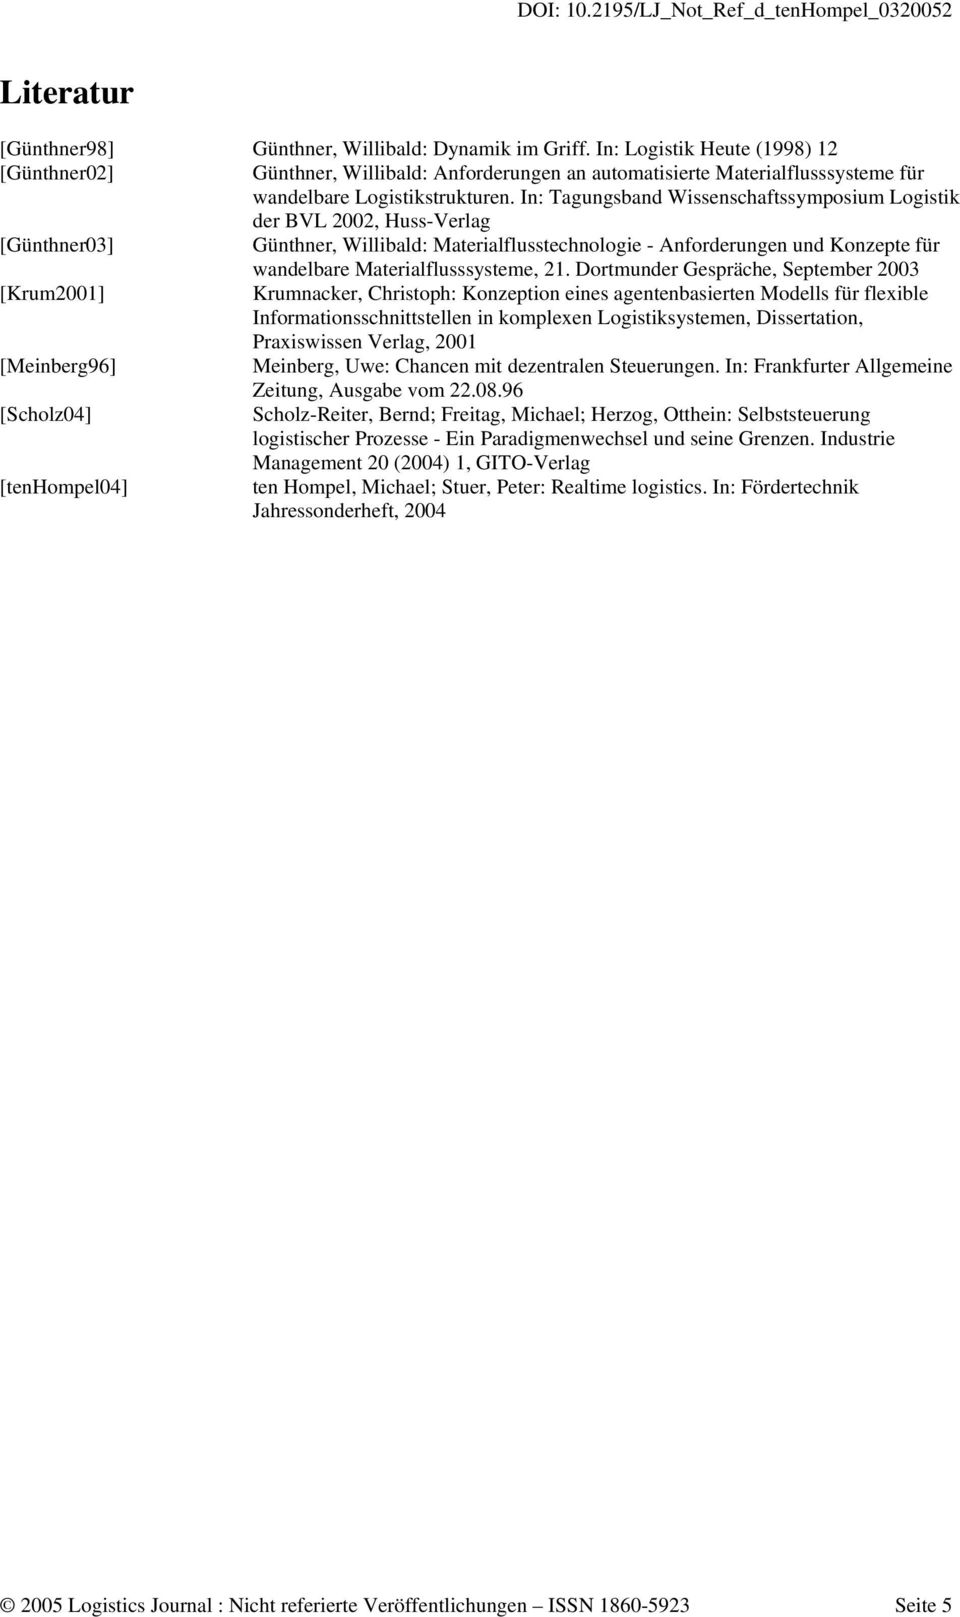 In: Tagungsband Wissenschaftssymposium Logistik der BVL 2002, Huss-Verlag [Günthner03] Günthner, Willibald: Materialflusstechnologie - Anforderungen und Konzepte für wandelbare Materialflusssysteme,